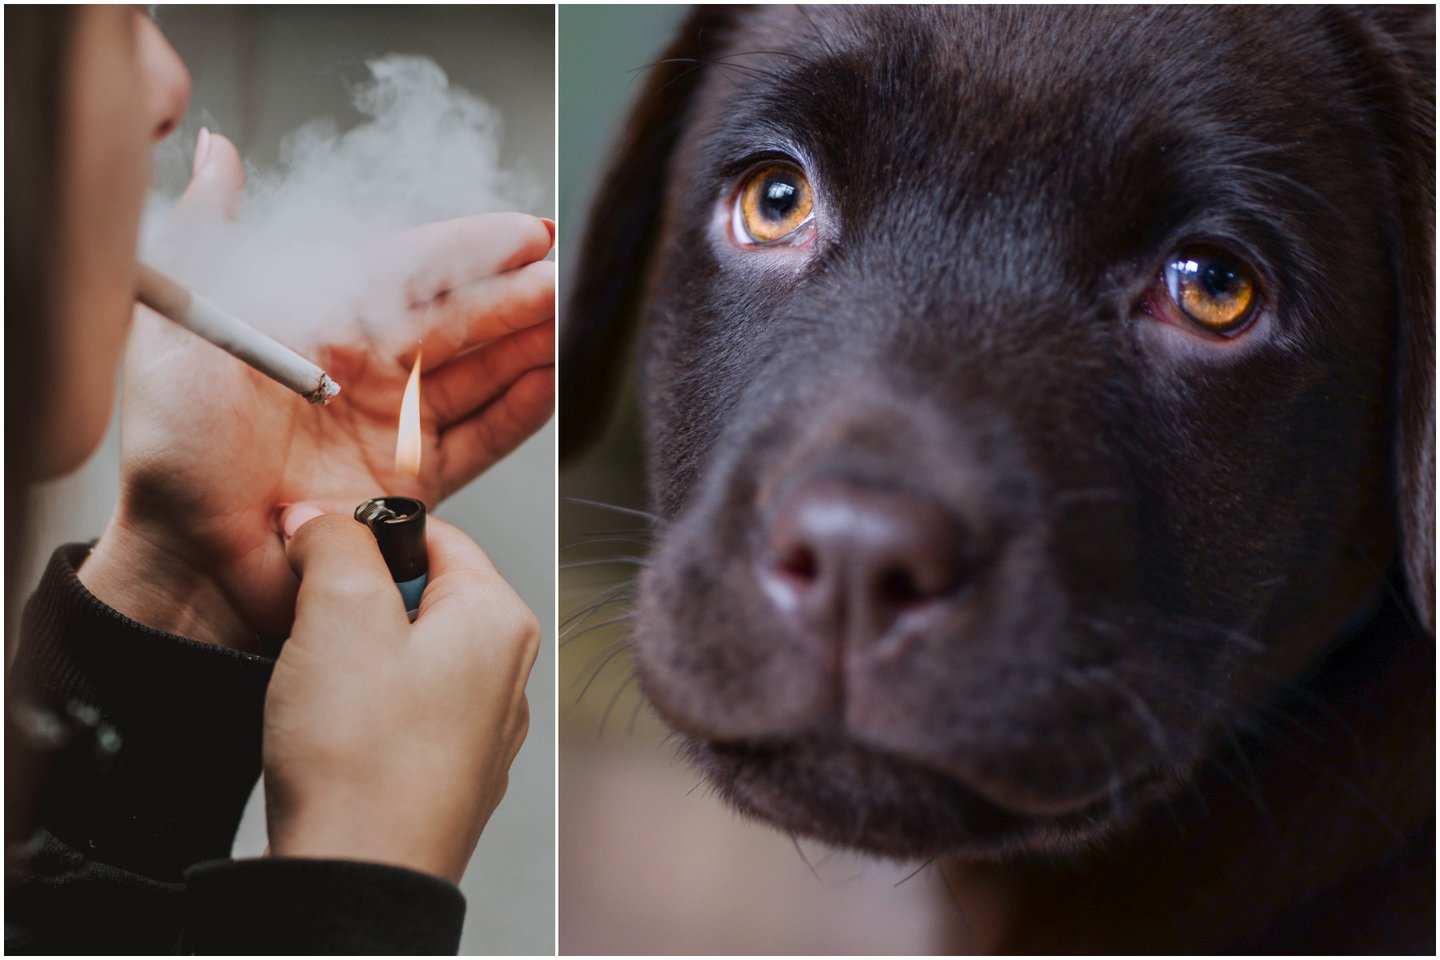 Pasak Užupio veterinarijos klinikos veterinarijos gydytojos Julijos Kviecinskienės, augintiniams pavojingas bet koks pasyvus rūkymas – net ir kaimynas, rūkantis gretimame bute.<br> Pexels.com nuotr.